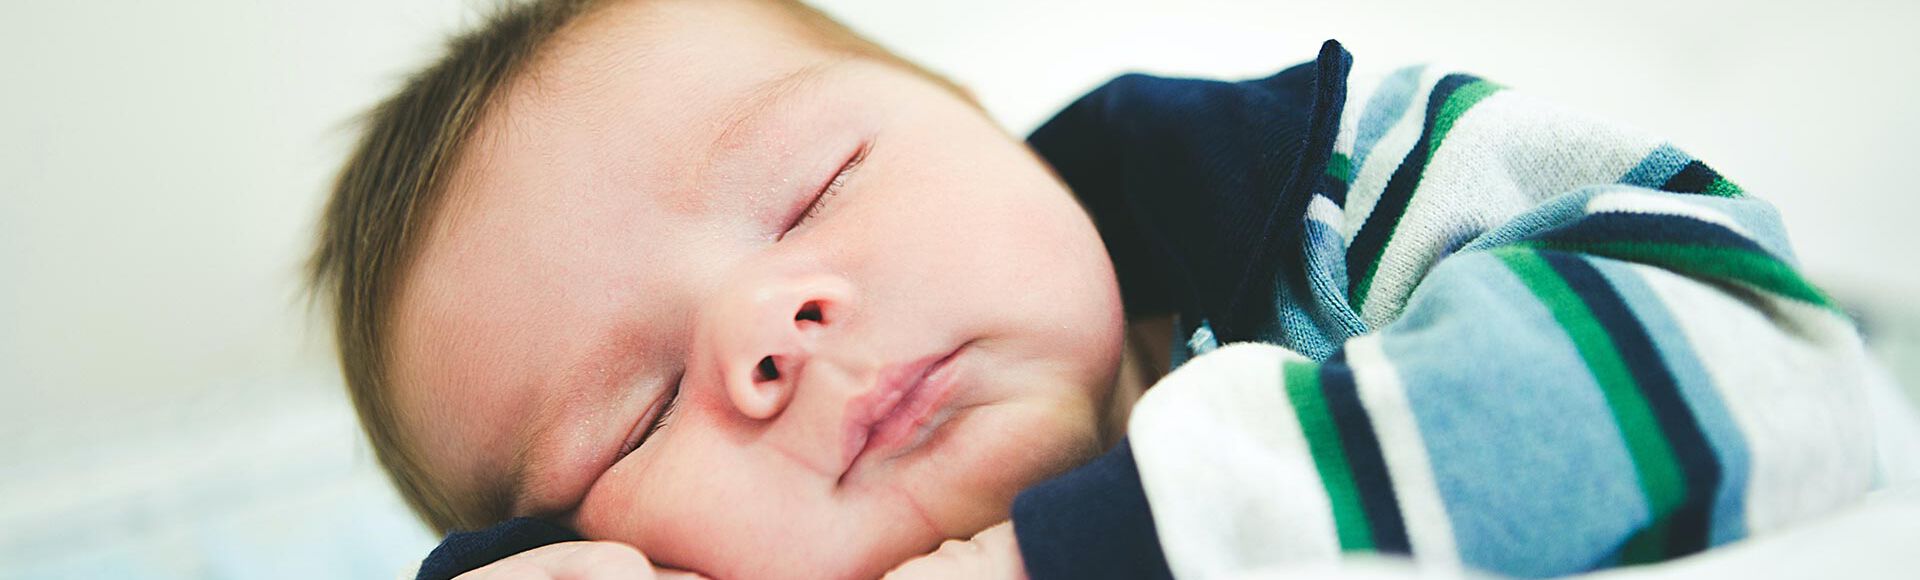 Cuánto debe dormir un bebé recién nacido